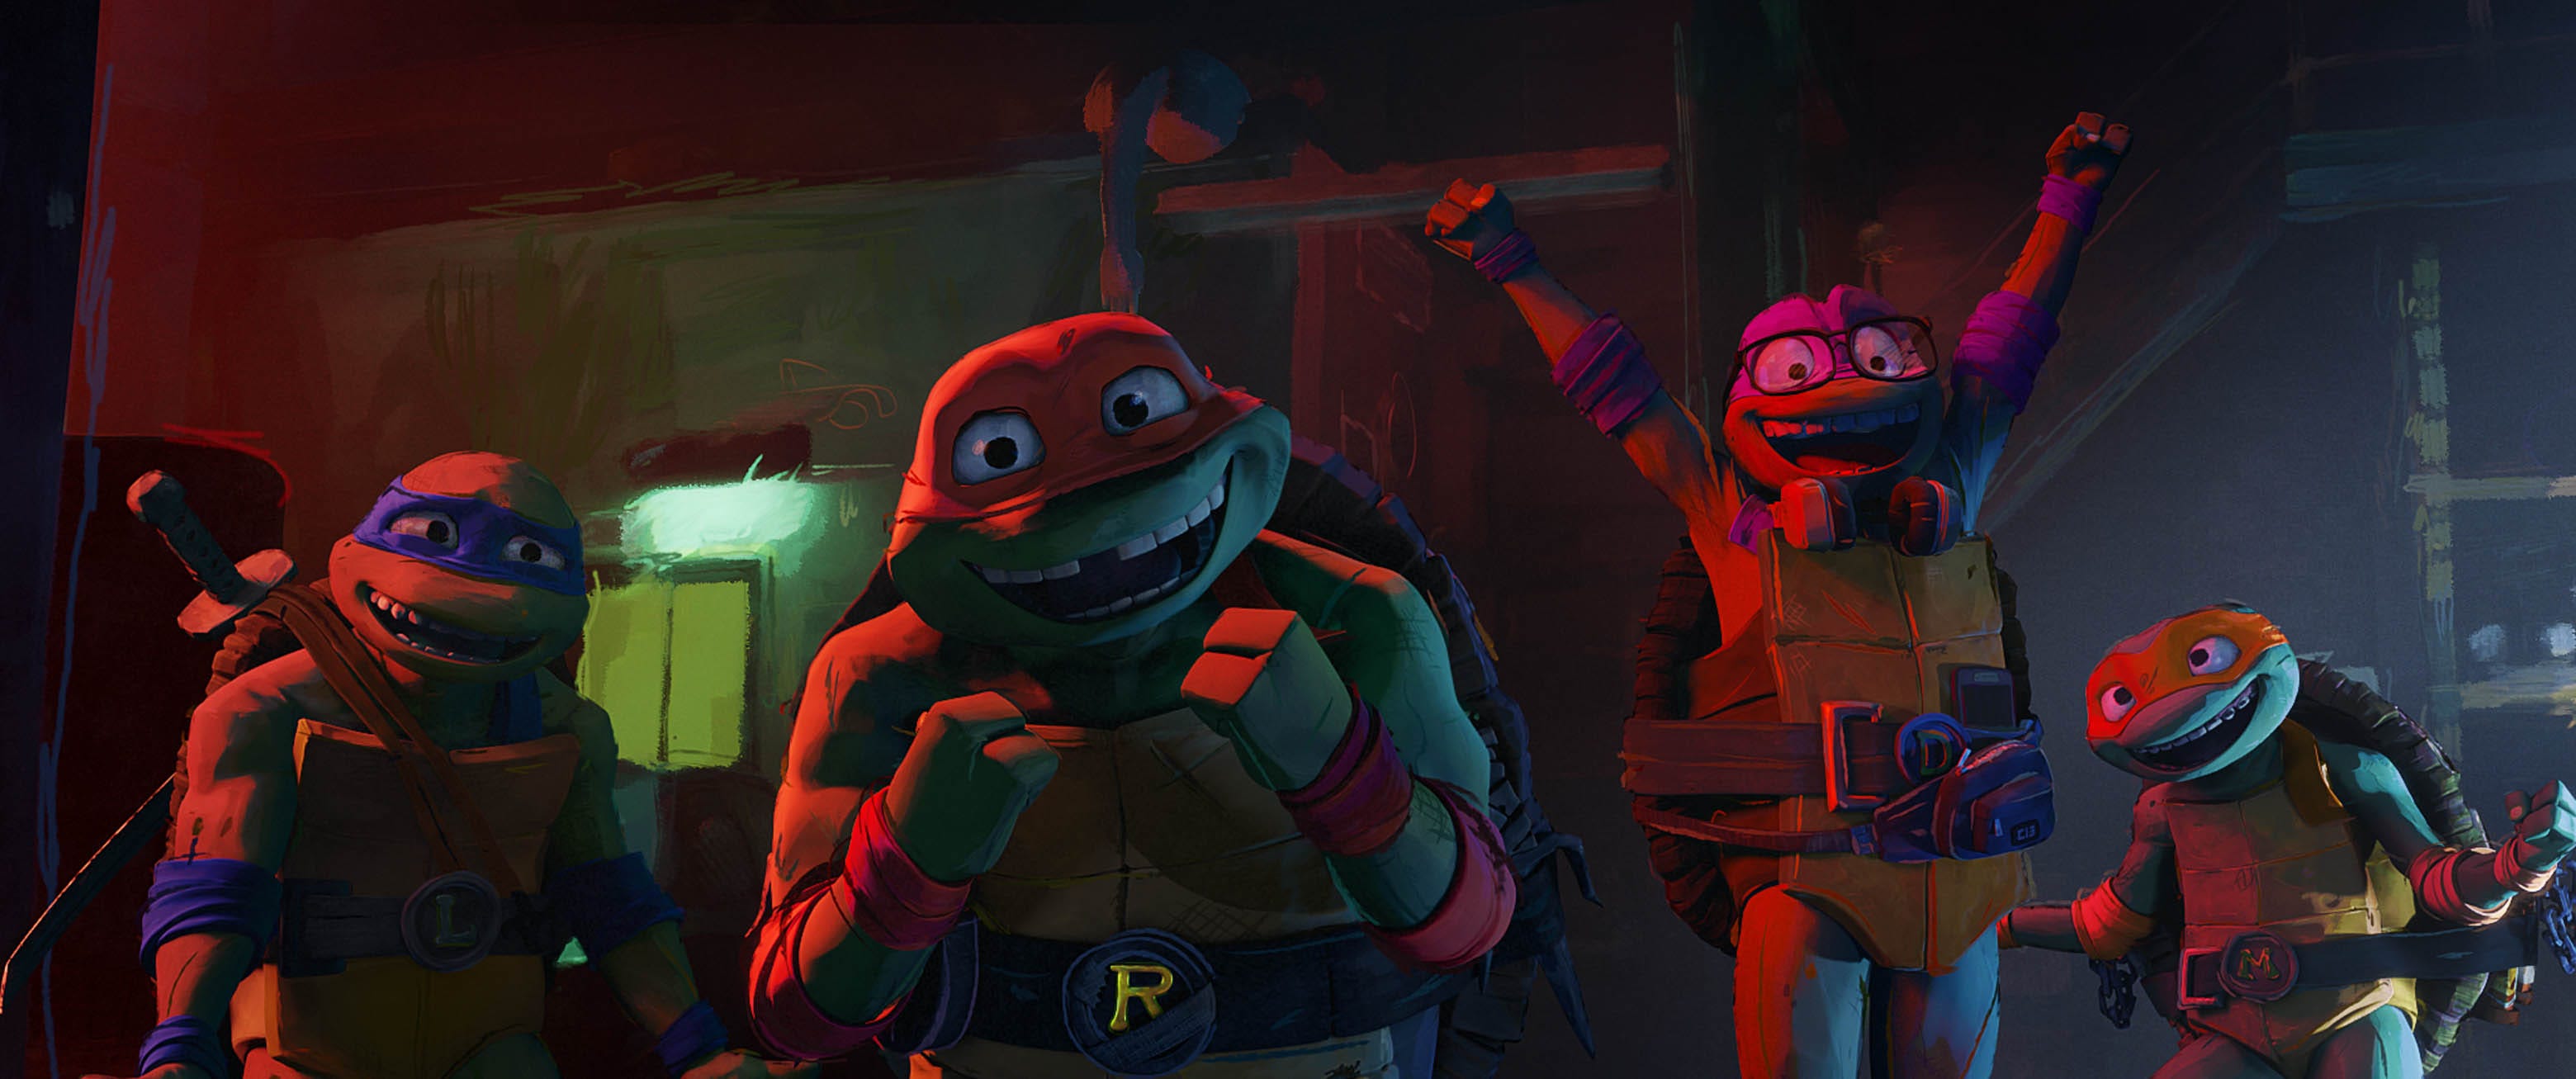 Descarga gratis el nuevo juego de Las Tortugas Ninja gracias a Netflix